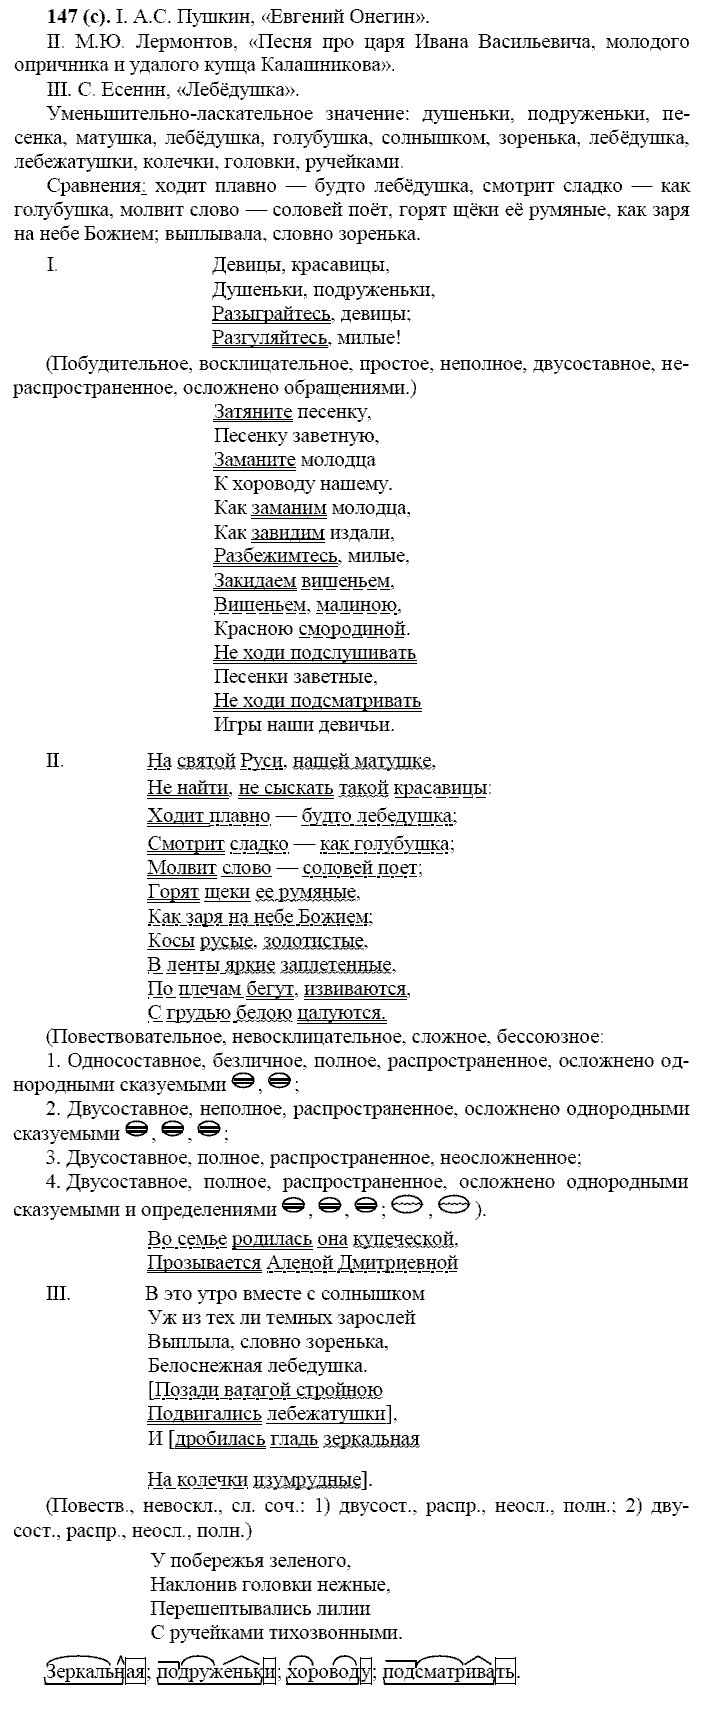 Русский язык, 11 класс, Власенков, Рыбченков, 2009-2014, задание: 147 (с)